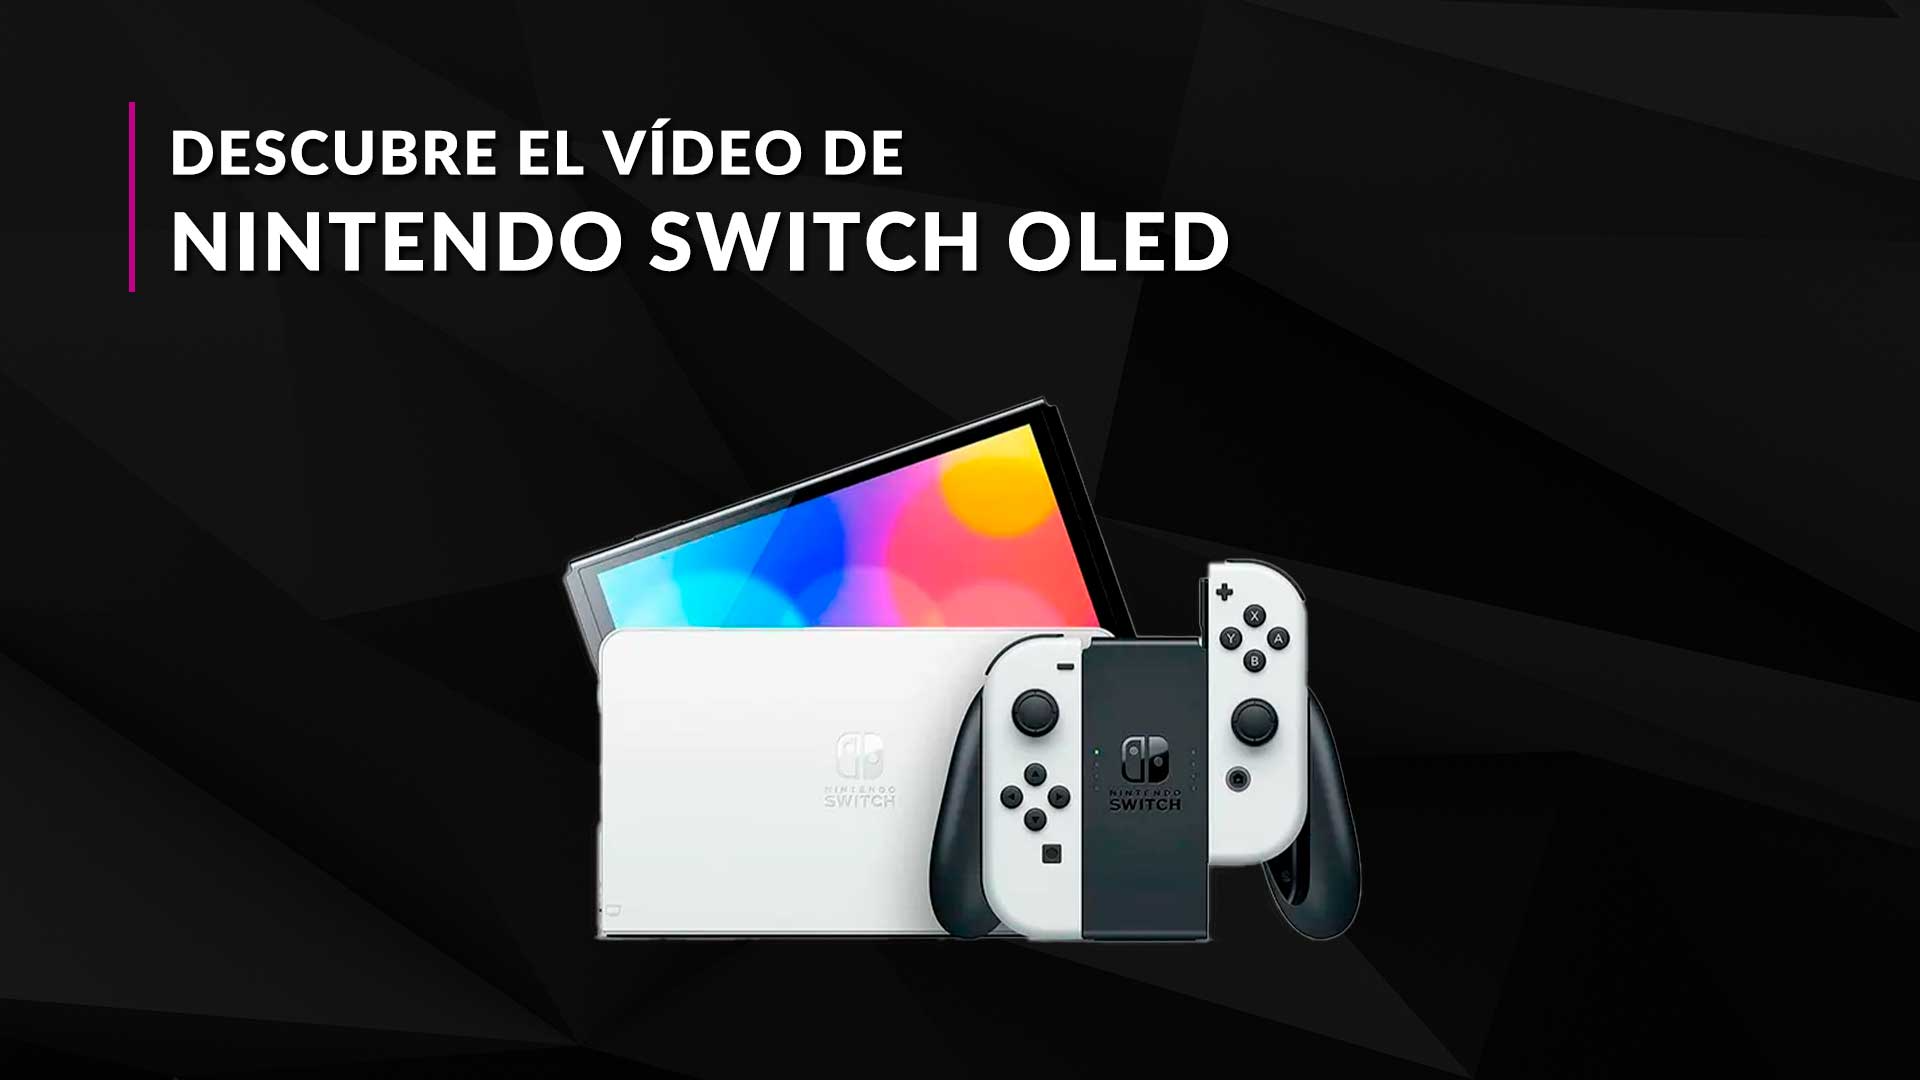 Nintendo Switch OLED a elegir + juego Mario Kart 8 Deluxe